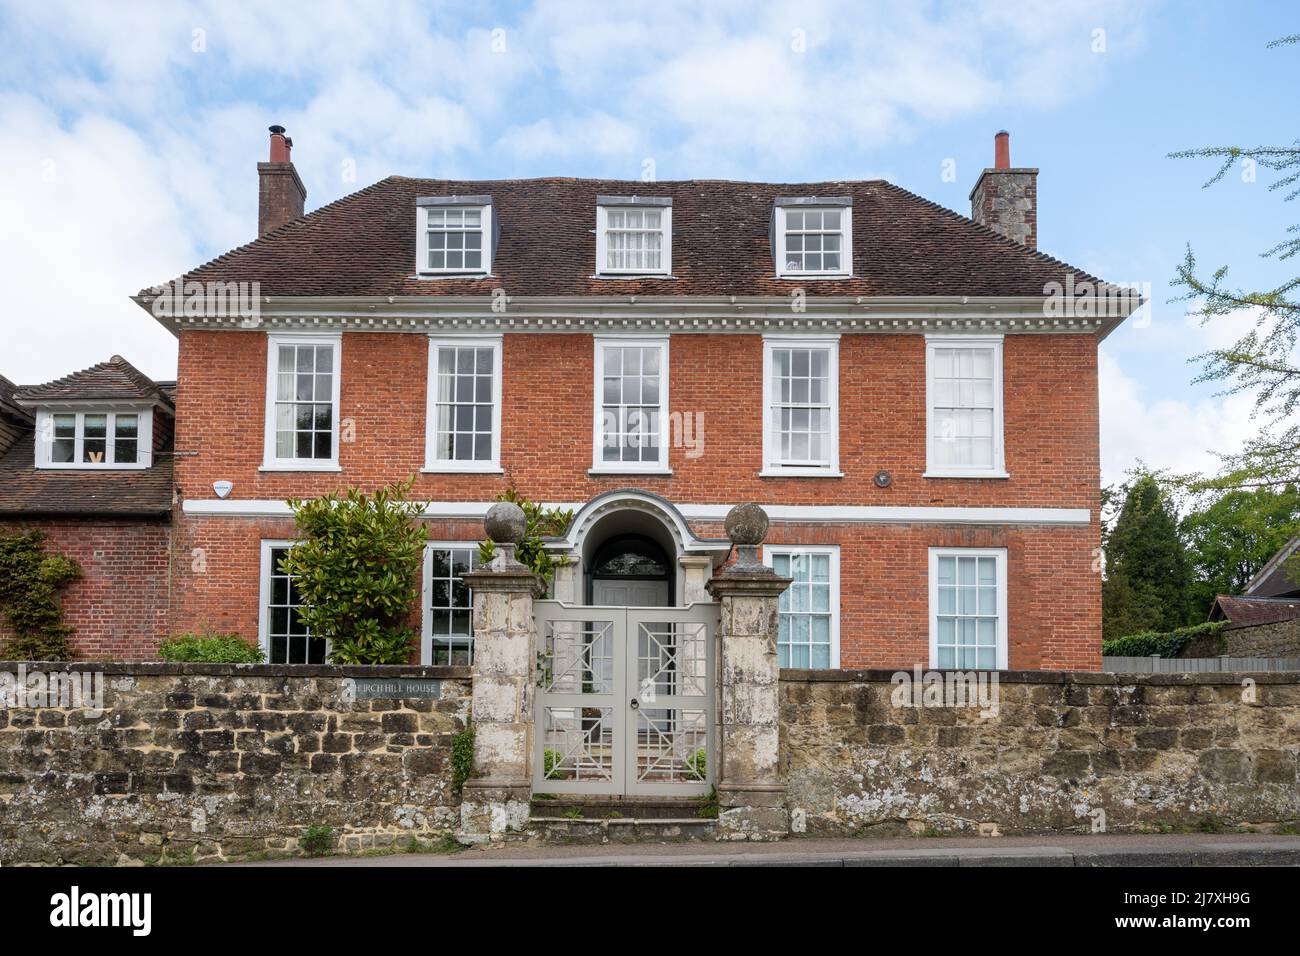 Church Hill House, une maison classée Queen Anne Grade II* à Haslemere, Surrey, Angleterre, Royaume-Uni Banque D'Images